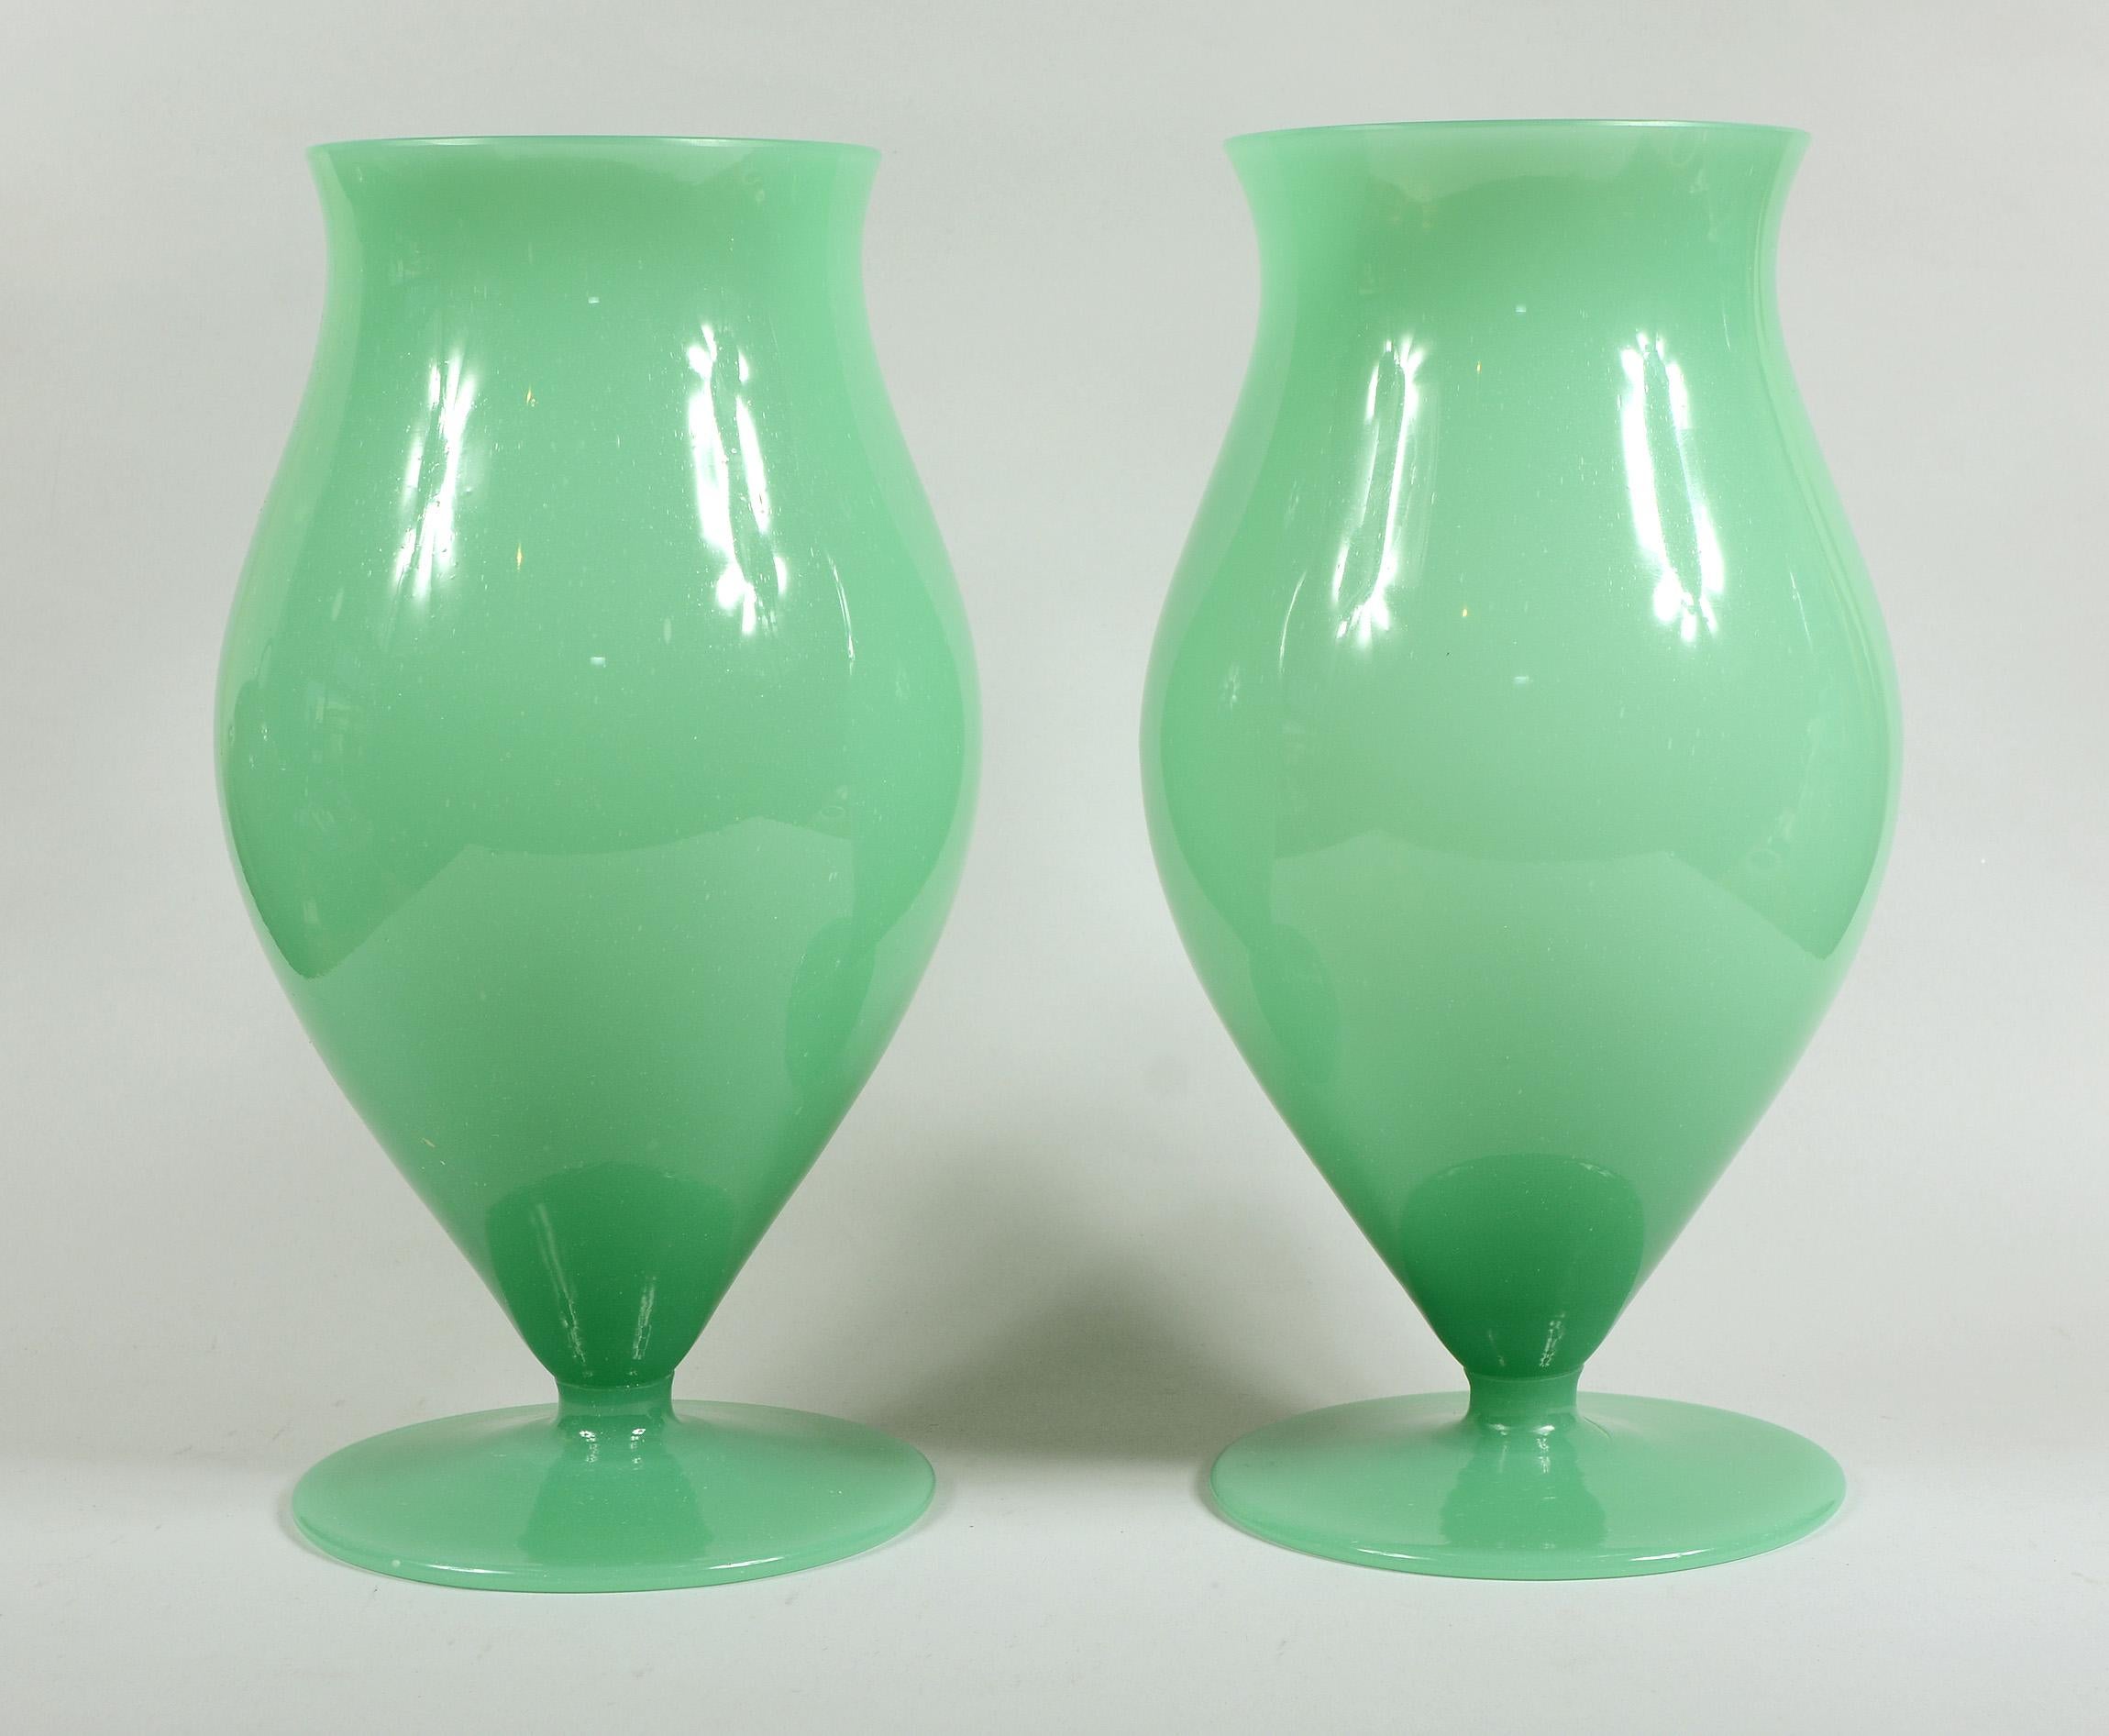 Paar Vasen aus Muranoglas in Urnenform. Diese sind ein grünes, undurchsichtiges, schaumiges Glas.